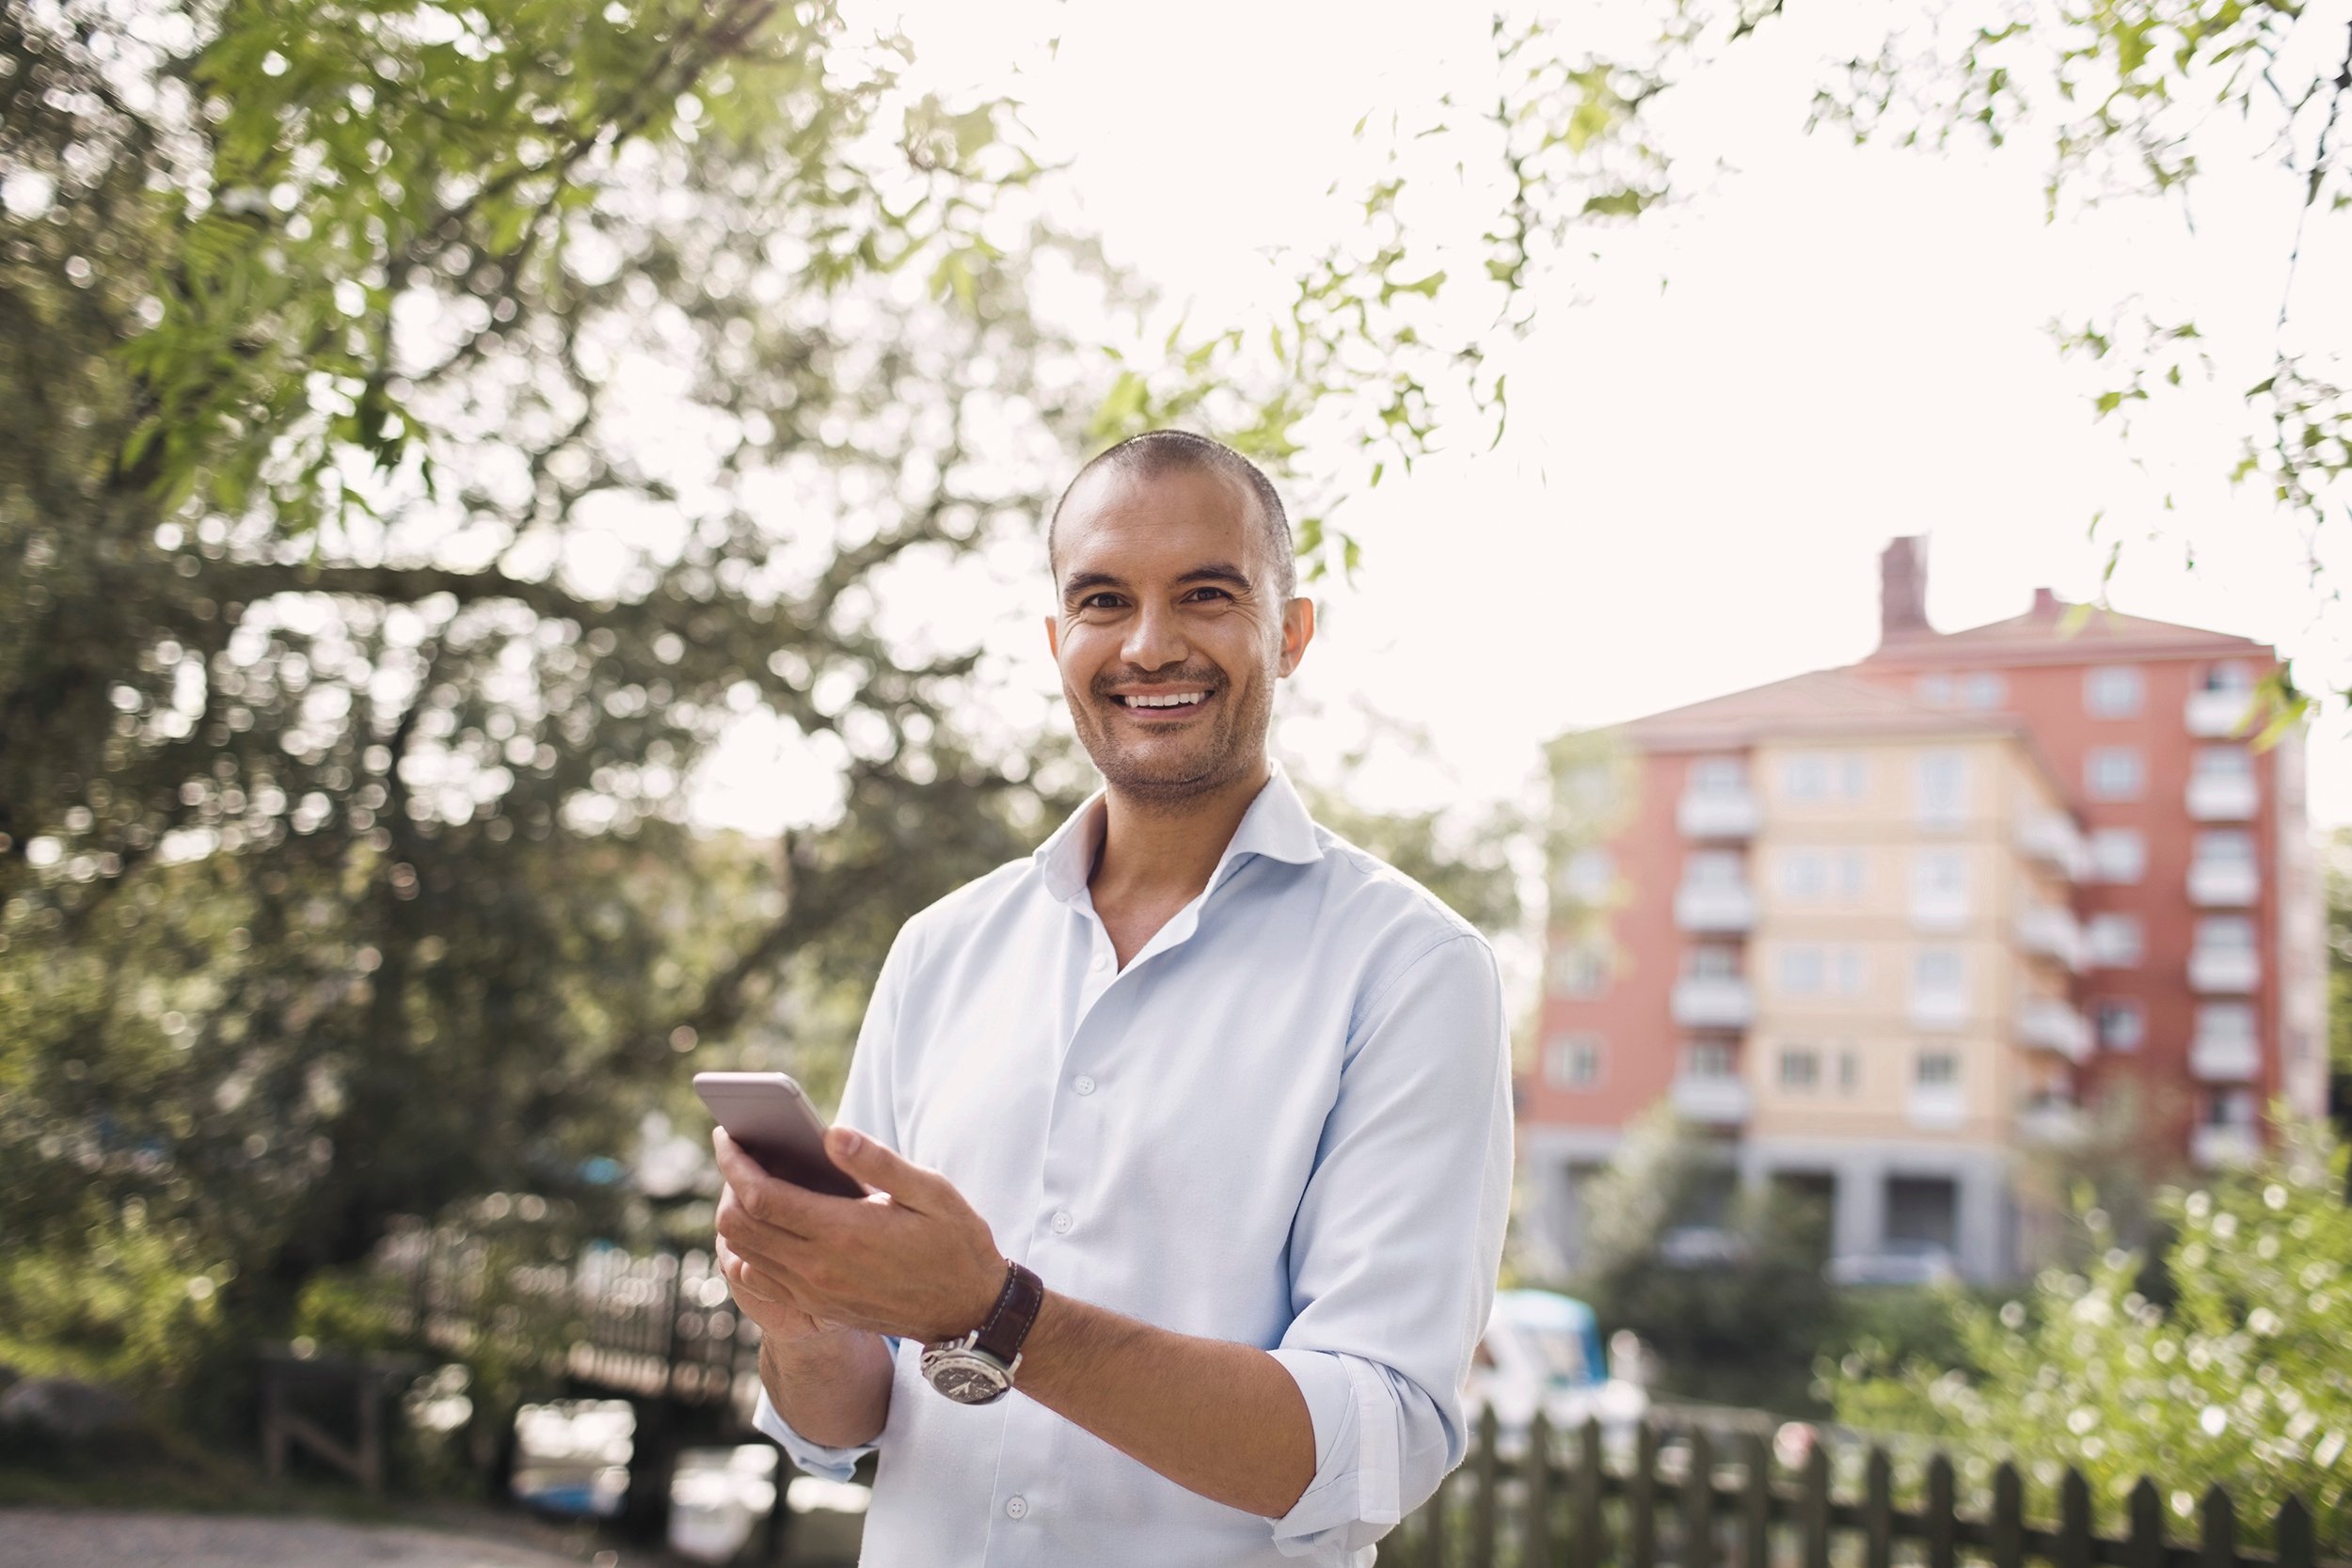 Vaaleaan kauluspaitaan pukeutunut mies pitelee älypuhelintaan ja hymyilee katse suoraan kameraan. Mies seisoo vehreässä kaupunkiympäristössä joen varrella, taustalla näkyy kelta-punainen kerrostalo. 